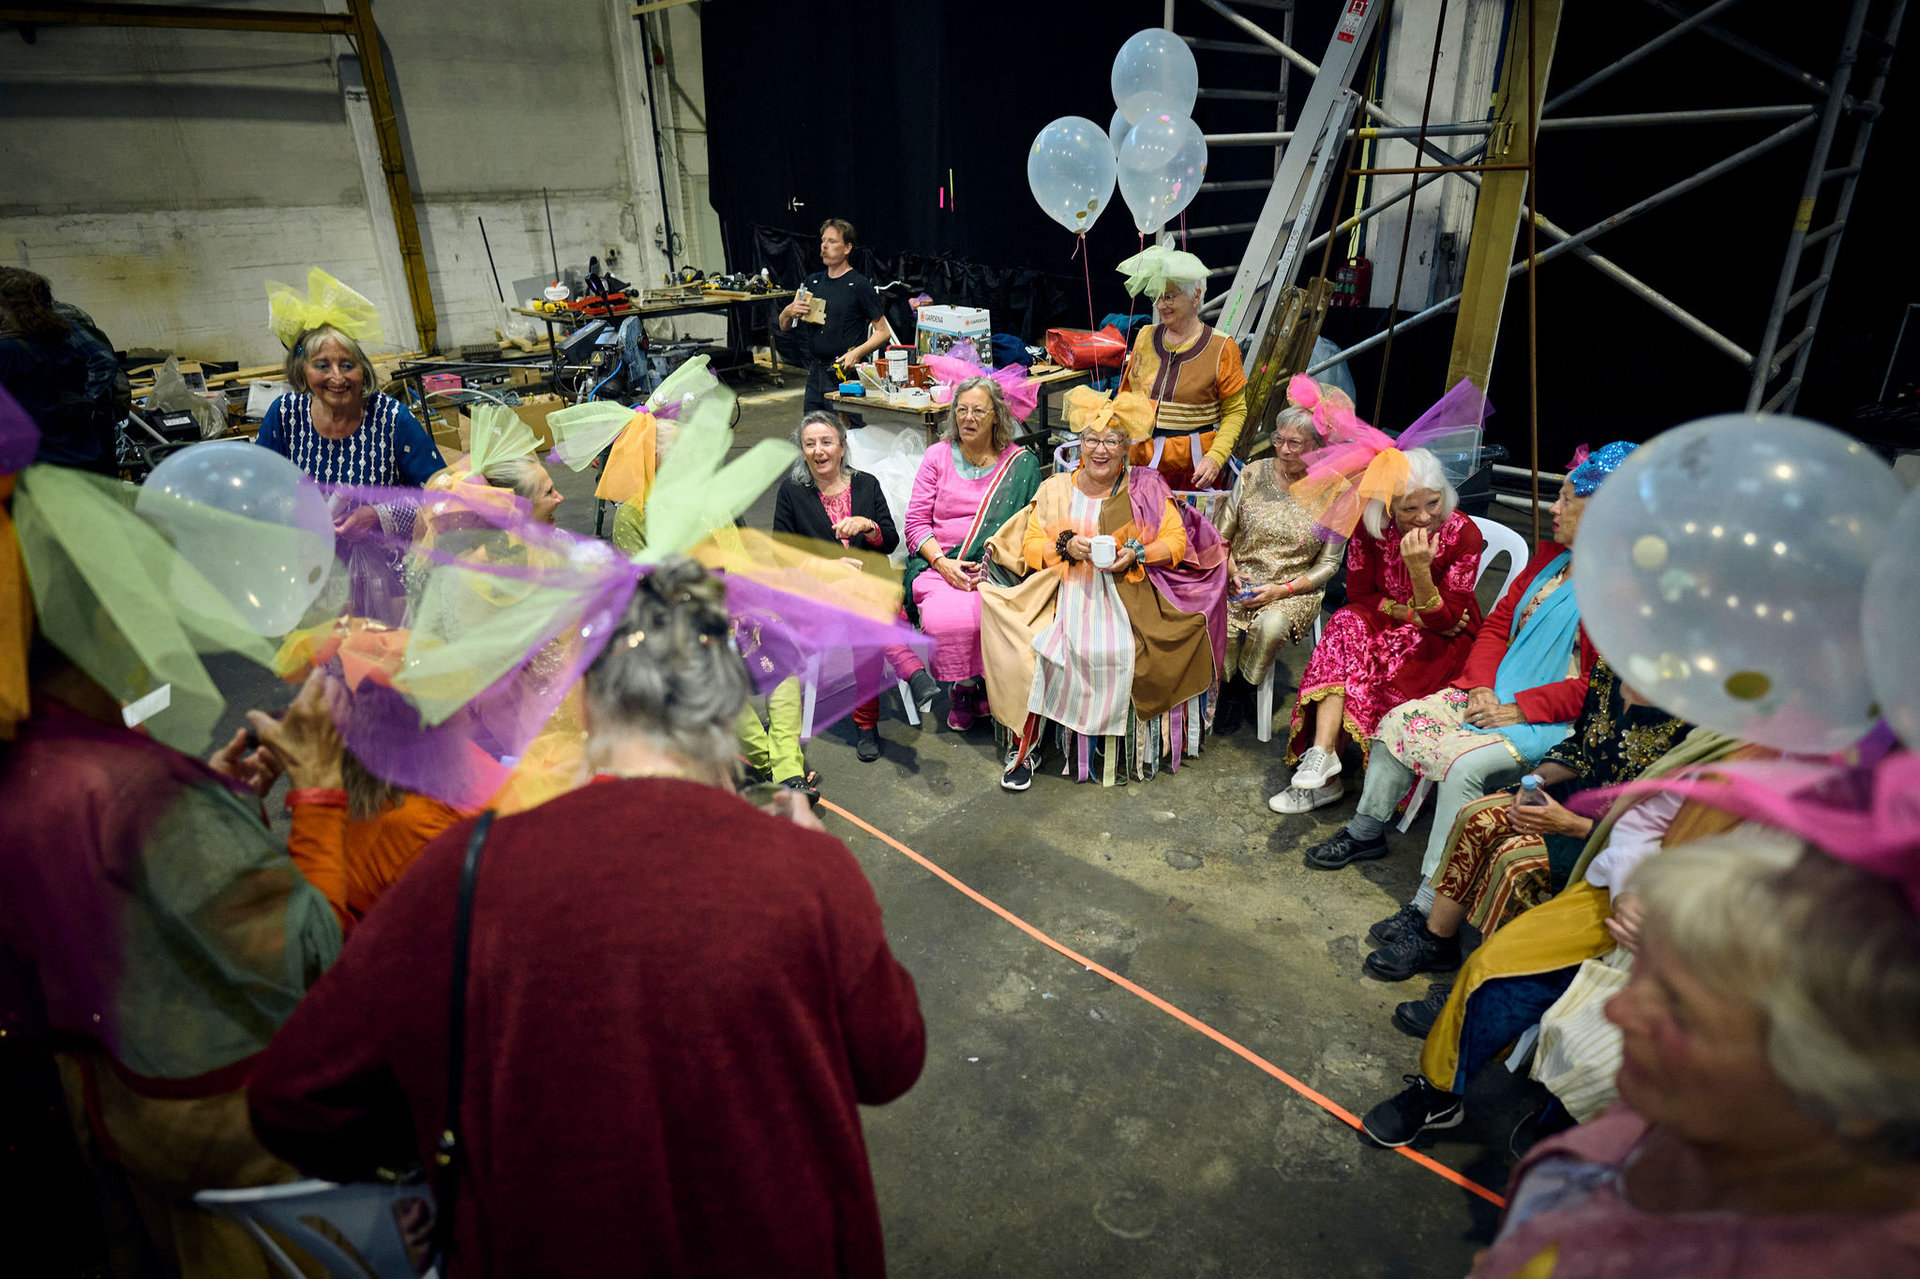 Foto: Blandt de deltagende foreninger var Kællingekoret, der her samler kræfter bag scenen inden forestillingen.